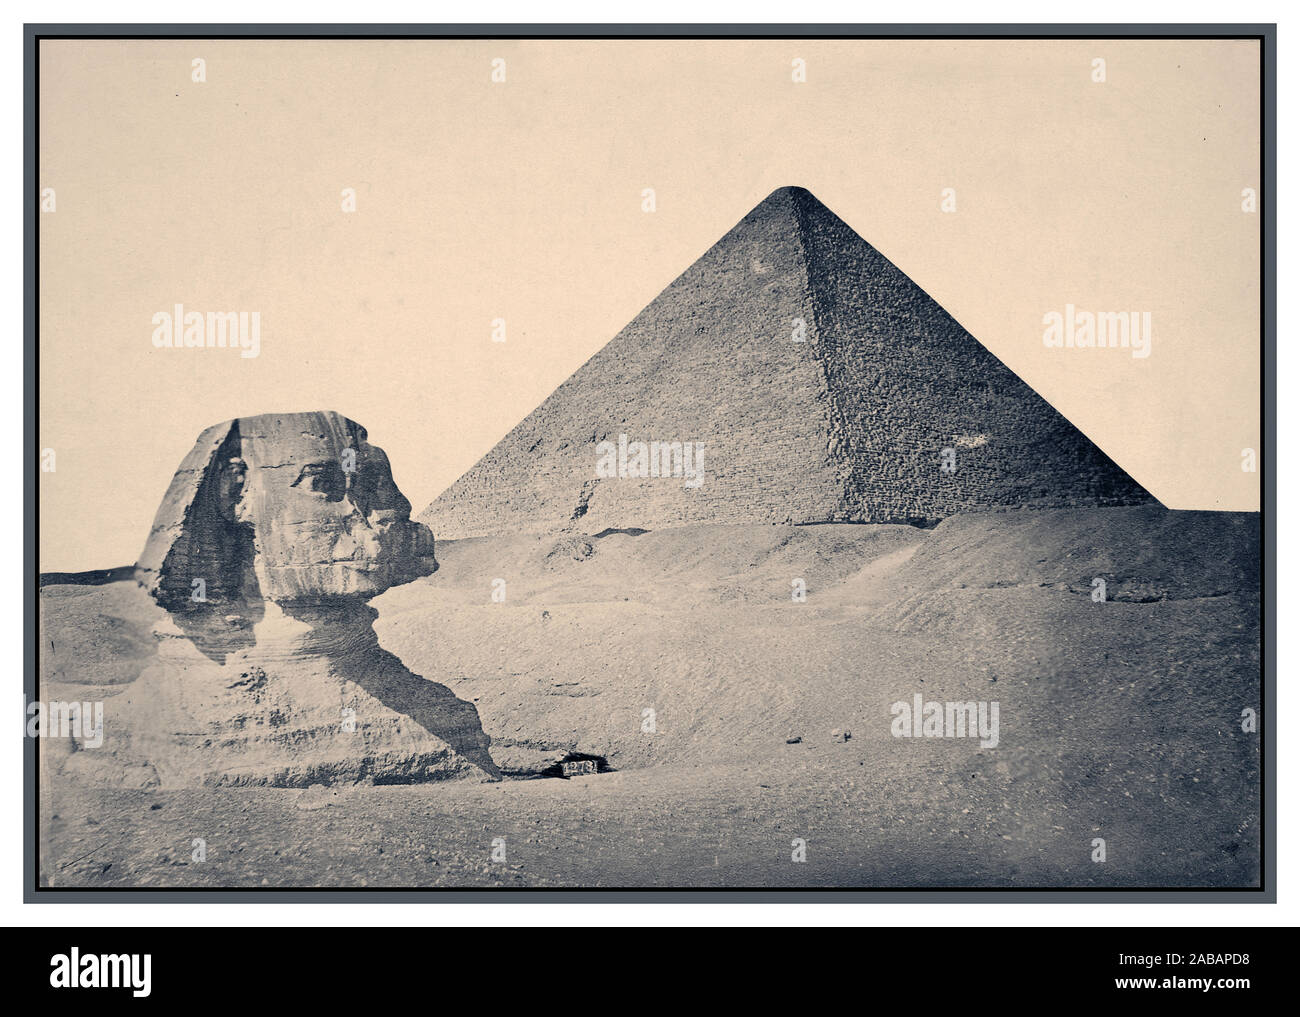 Années 1880 Vintage Gizeh. Pyramide de Khafré et Sphinx 1880 B&W image sépia de Gizeh. ca. 2575 BC-ca. 2465 BC (Pyramide et Sphinx) pyramides de Gizeh, Muḩāfaz̧at Maţrūḩ, Égypte égyptiens antiques égyptienne de l'Afrique, ive dynastie grand Sphinx de Gizeh, communément appelé le Sphinx de Gizeh ou juste le Sphinx, est une statue en pierre calcaire d'un sphinx, une créature mythique avec le corps d'un lion et la tête d'un homme donnant directement de l'Ouest à l'Est, il se dresse sur le plateau de Gizeh, sur la rive ouest du Nil à Gizeh, Egypte. Banque D'Images